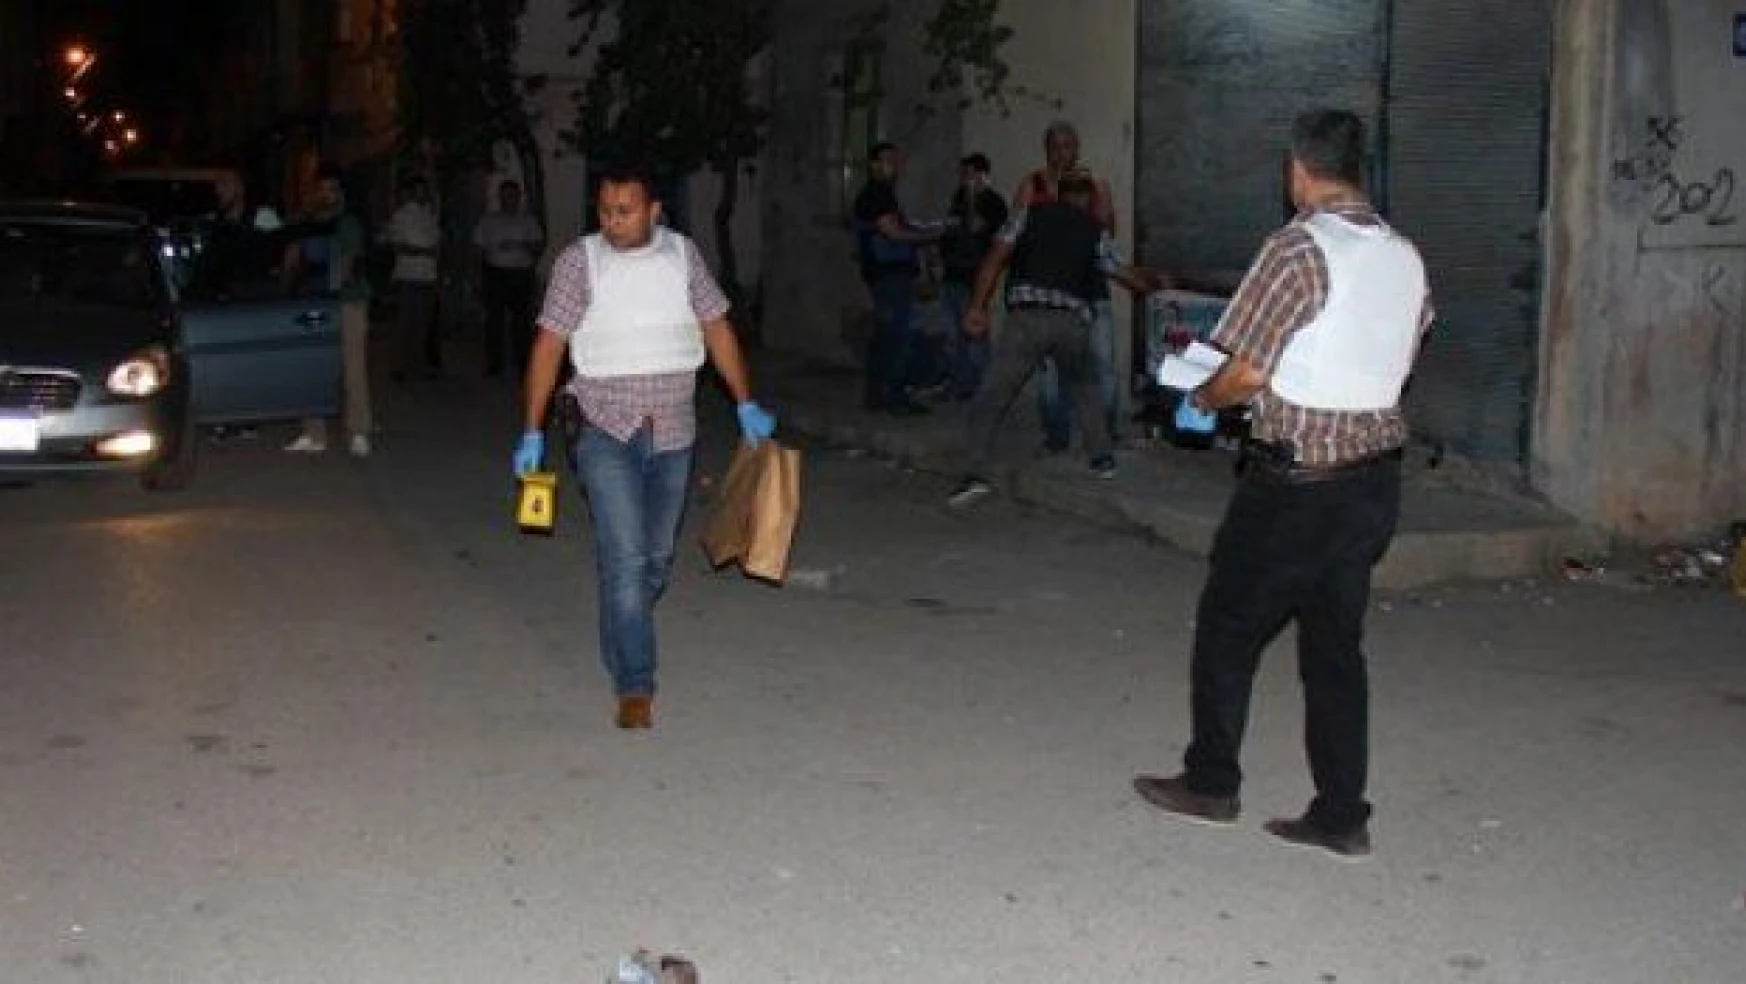 Ankara'daki saldırıyı protesto bahanesiyle düğün evine ateş açtılar:1 ölü